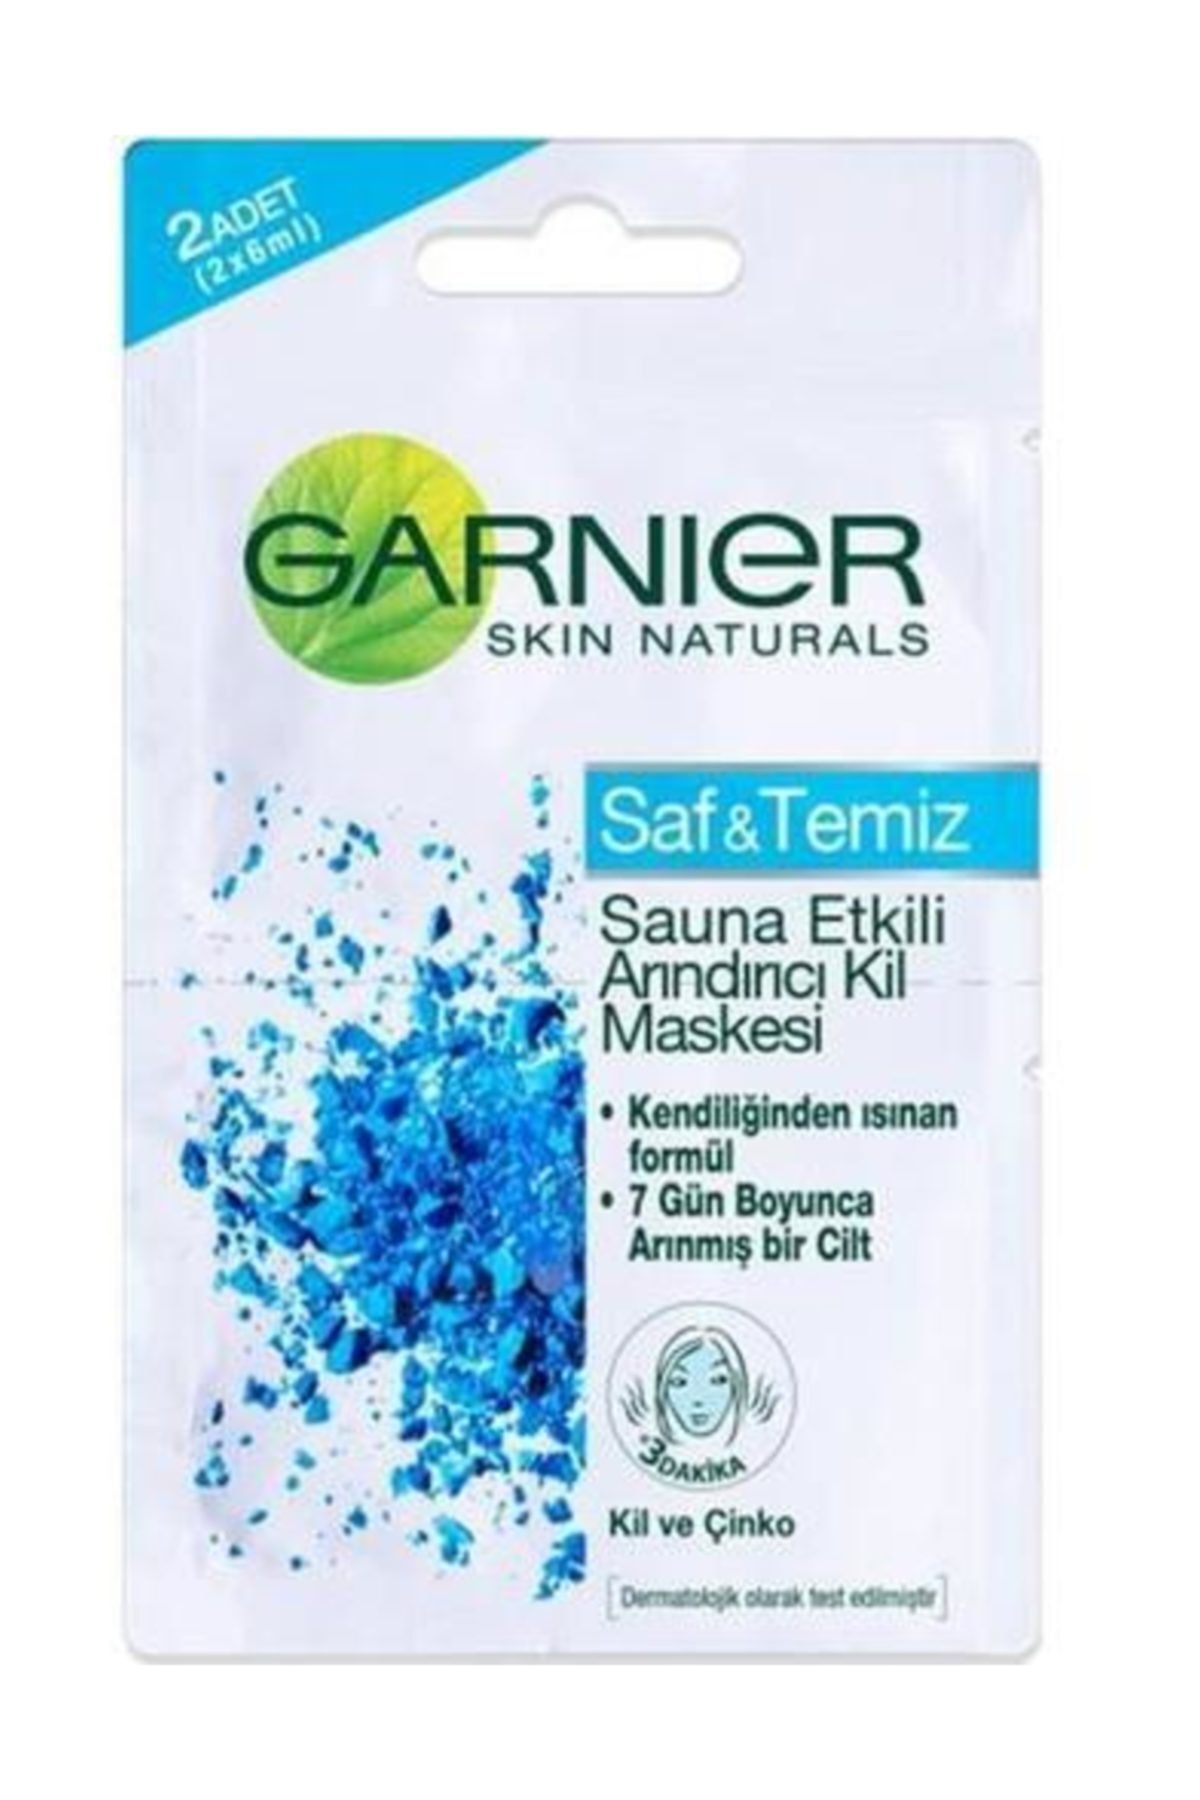 Garnier Saf & Temiz Sauna Etkili 2'li Arındırıcı Kil Maskesi 2 x 6 ml 3600541875951